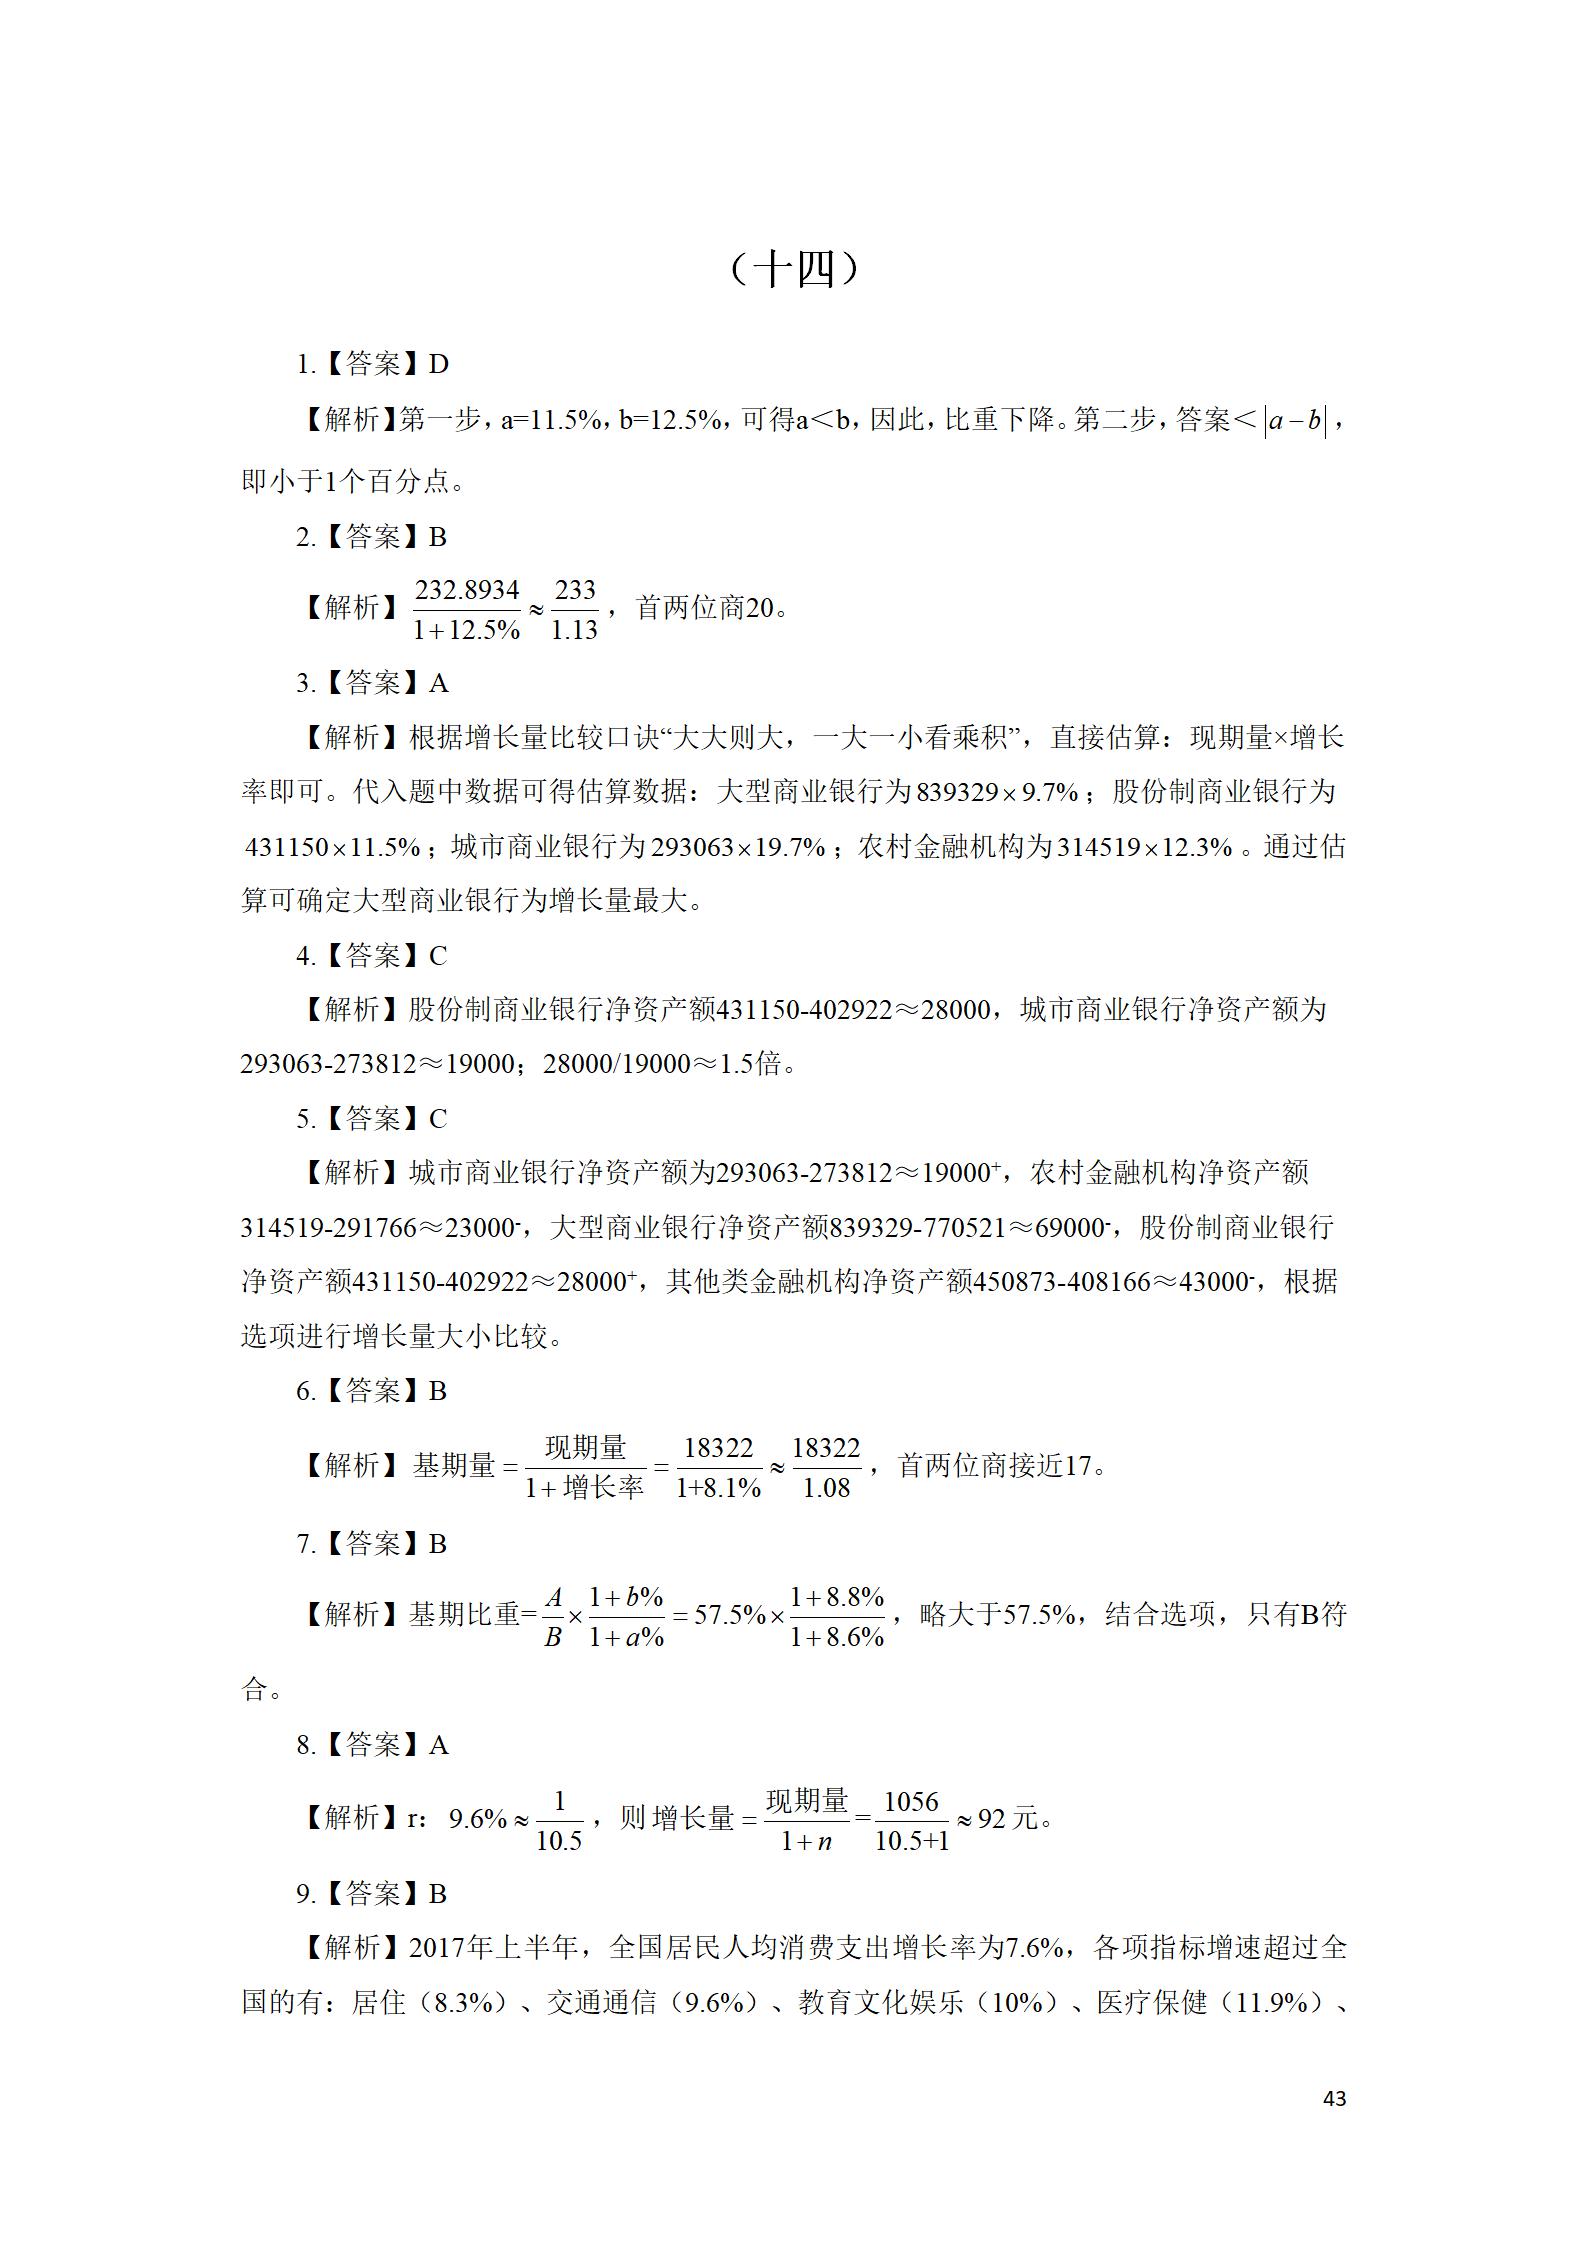 【资料】督学-部分解析（第3部分1-17套）_43.jpg